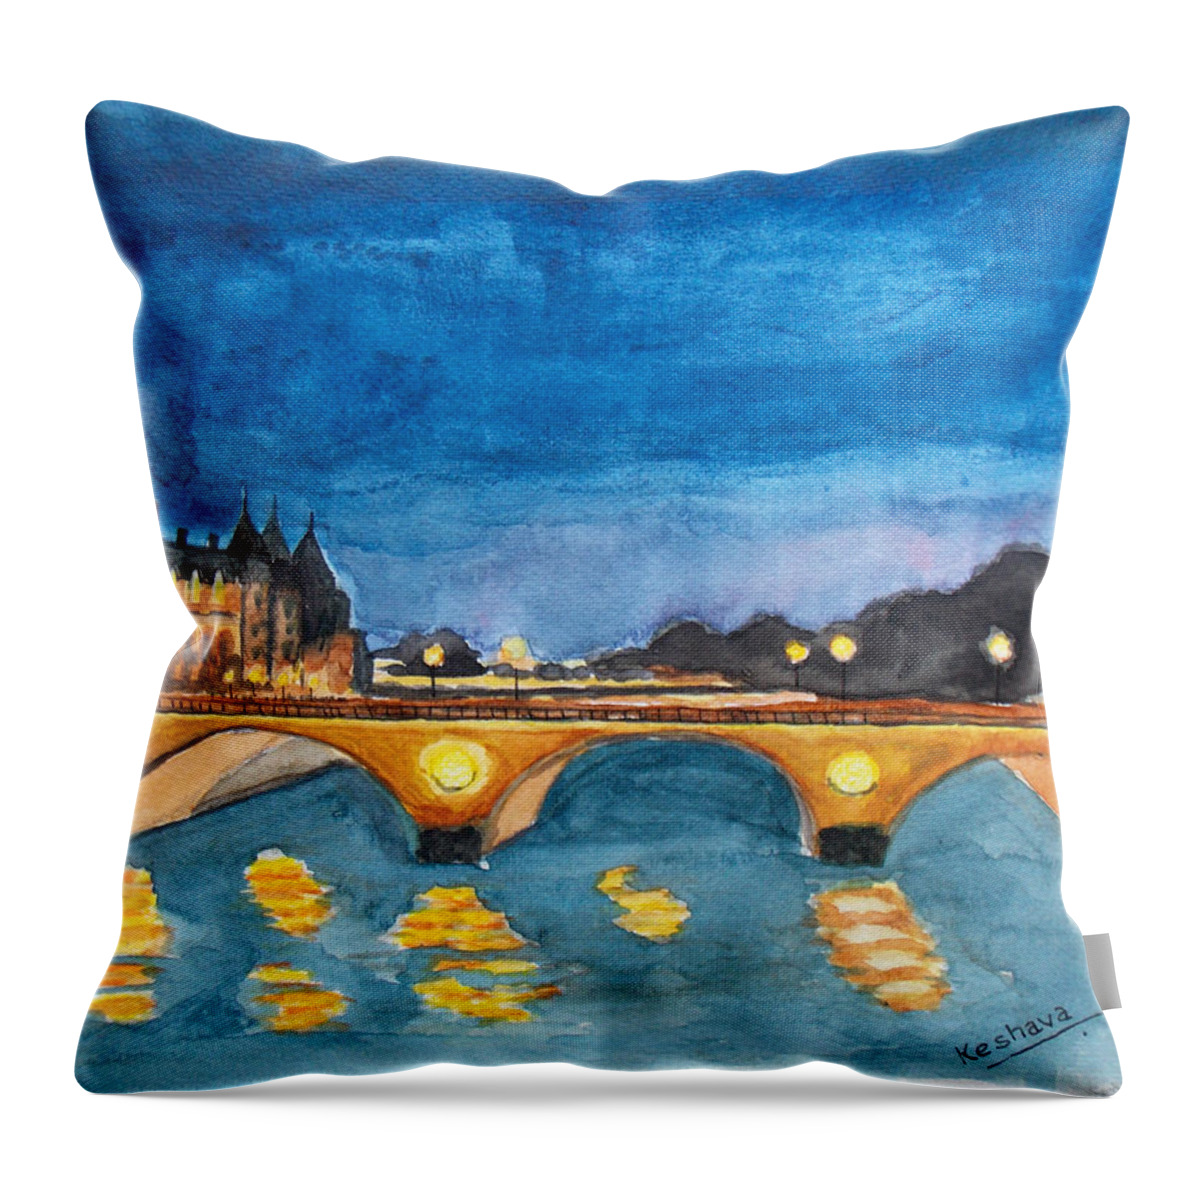 Paris Throw Pillow featuring the painting Saint-Michael Bvd. paris by Keshava Shukla